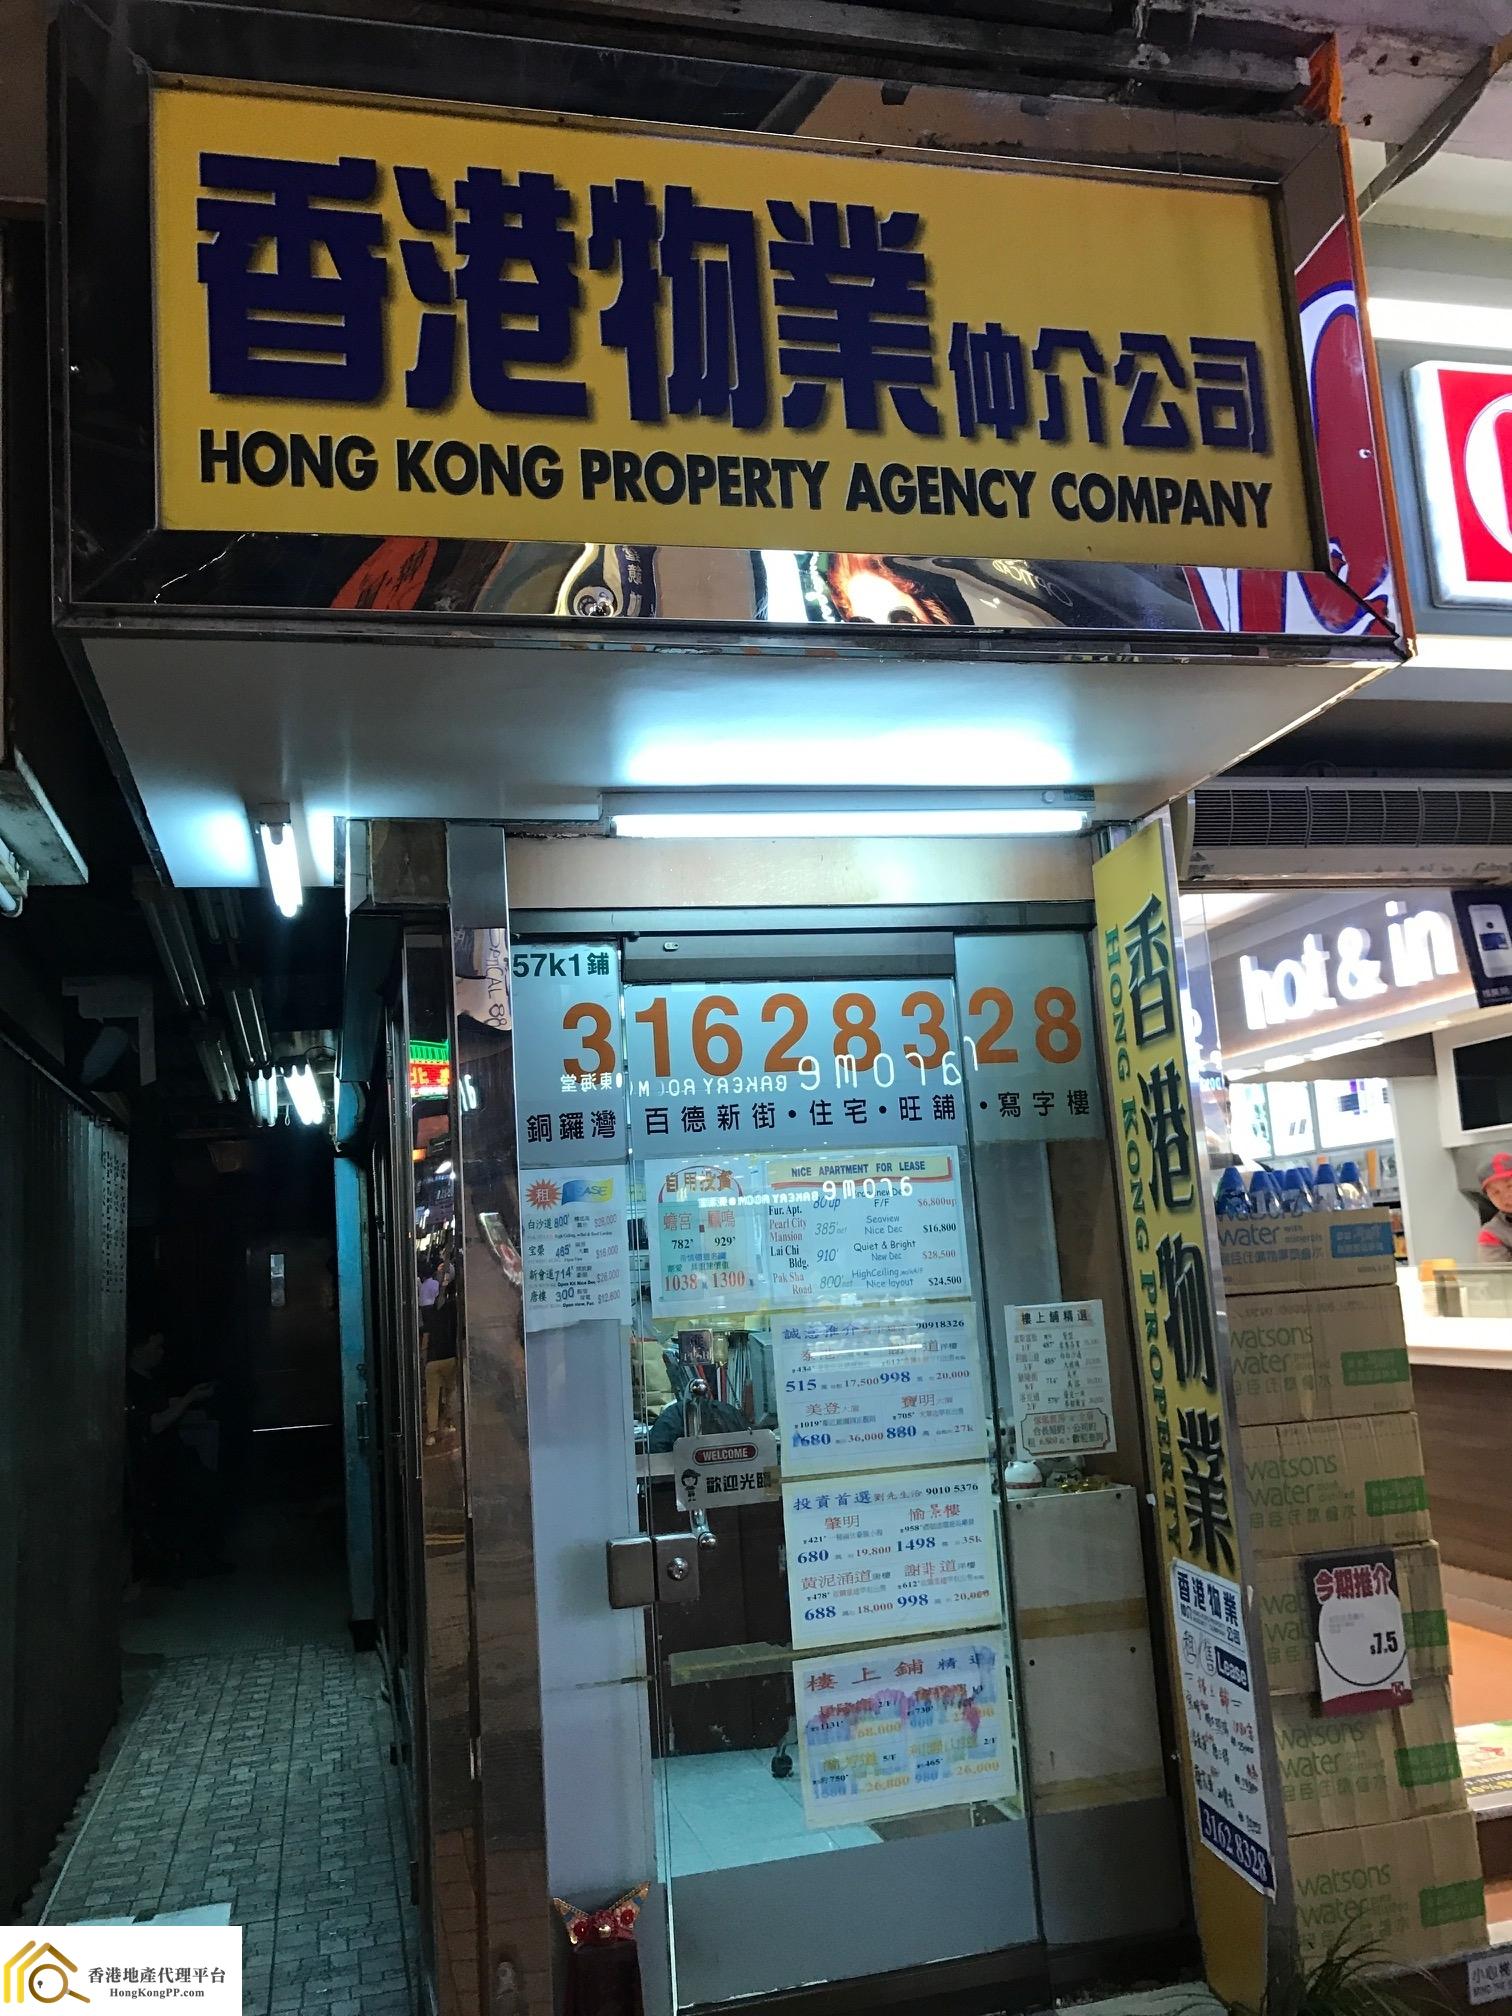 地產代理公司: 香港物業仲介 Hong Kong Property Agency